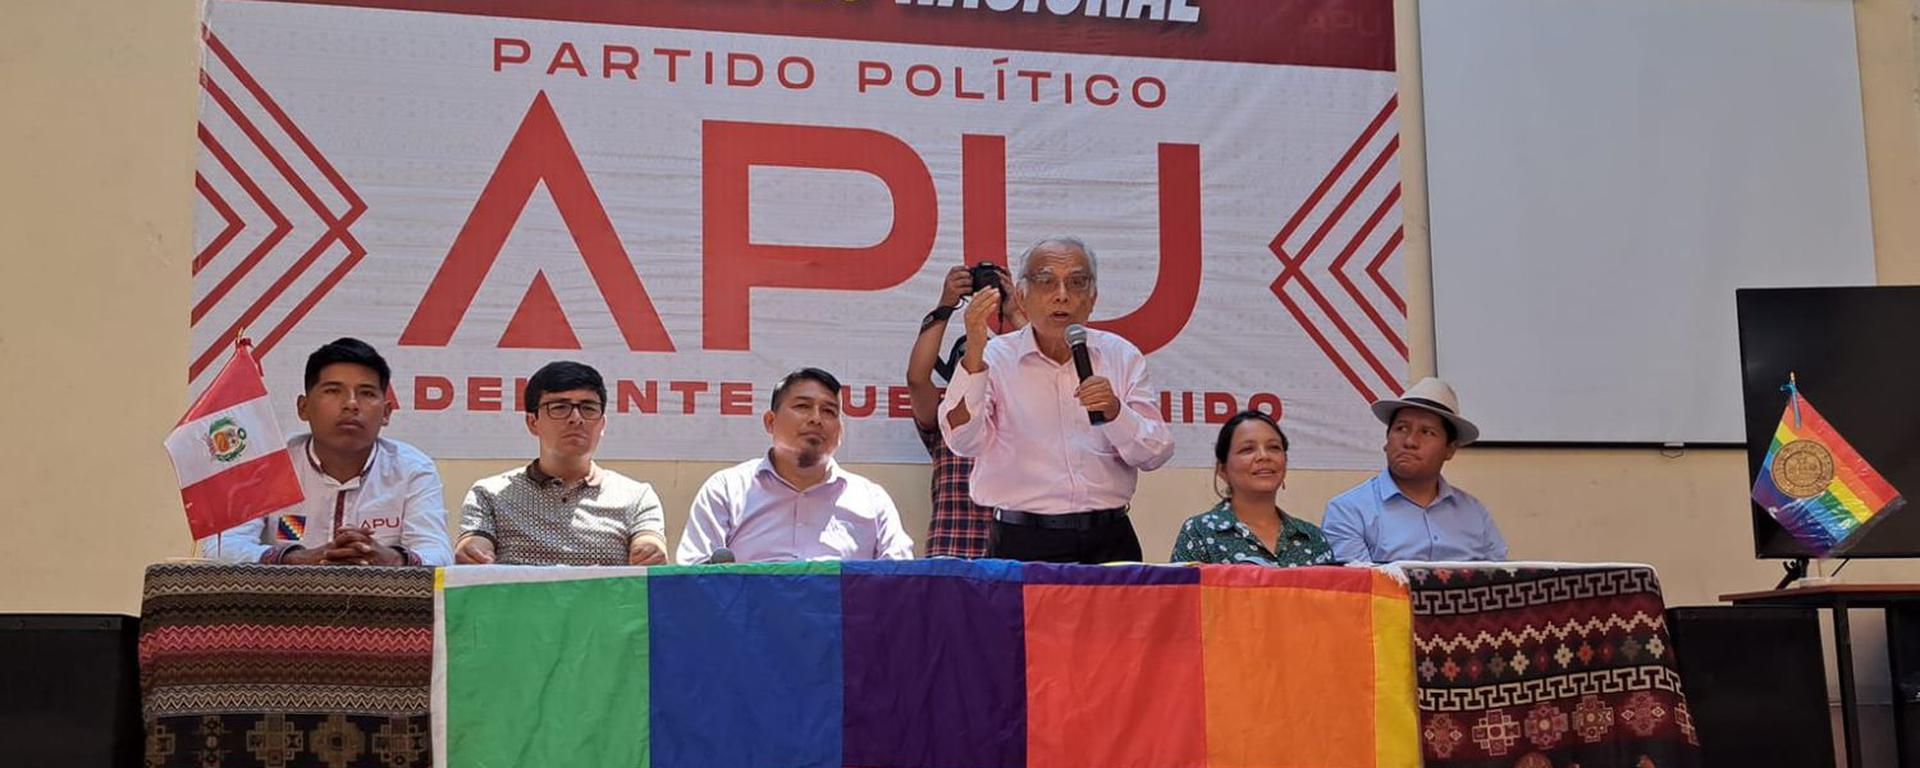 Aníbal Torres, acusado por el golpe de Estado, impulsa la inscripción de nuevo partido político castillista | INFORME